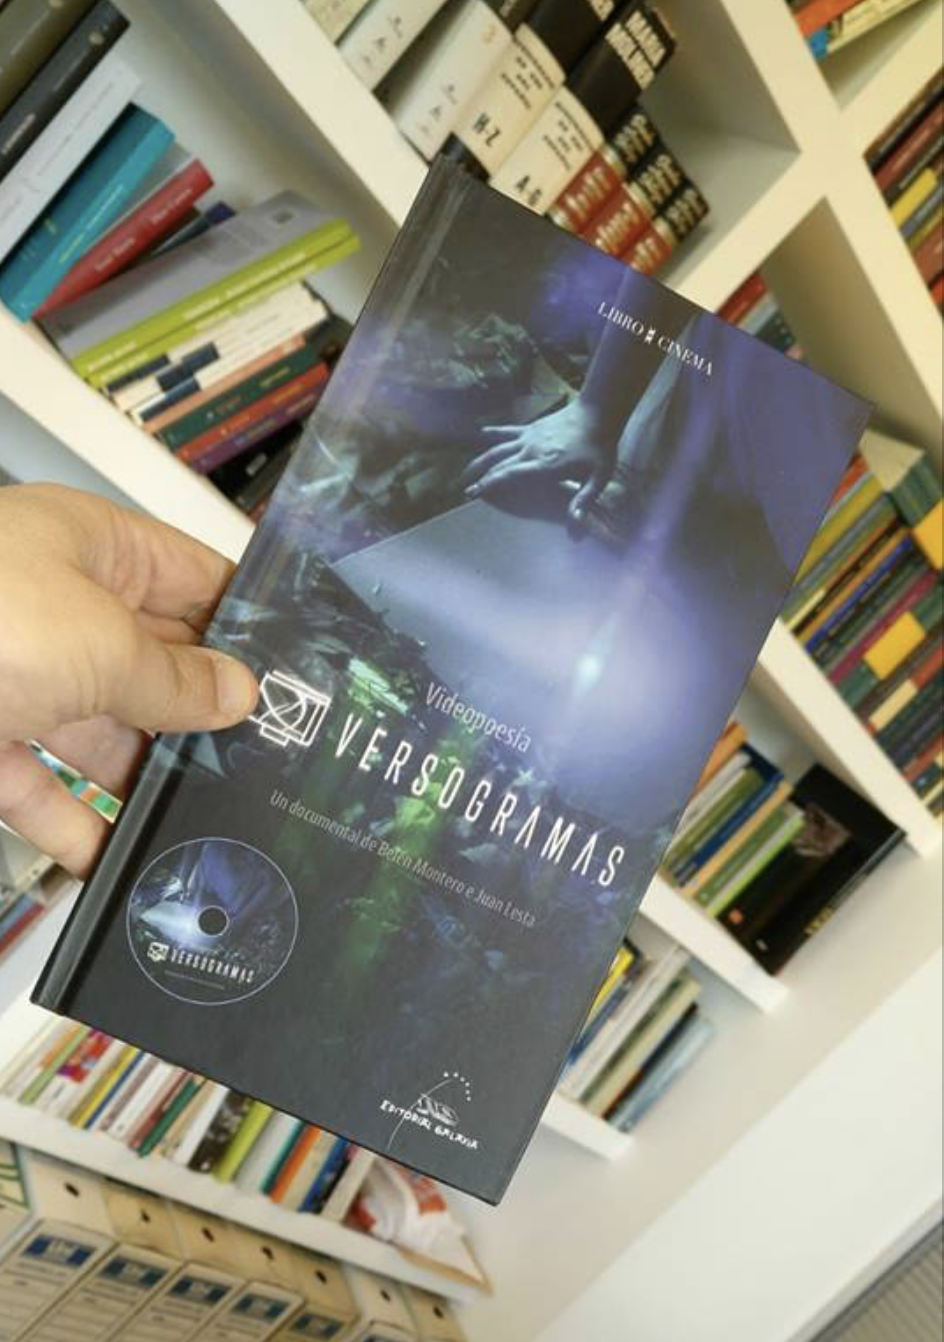 El libroDVD Versogramas (Editorial Galaxia) llega a las librerías!